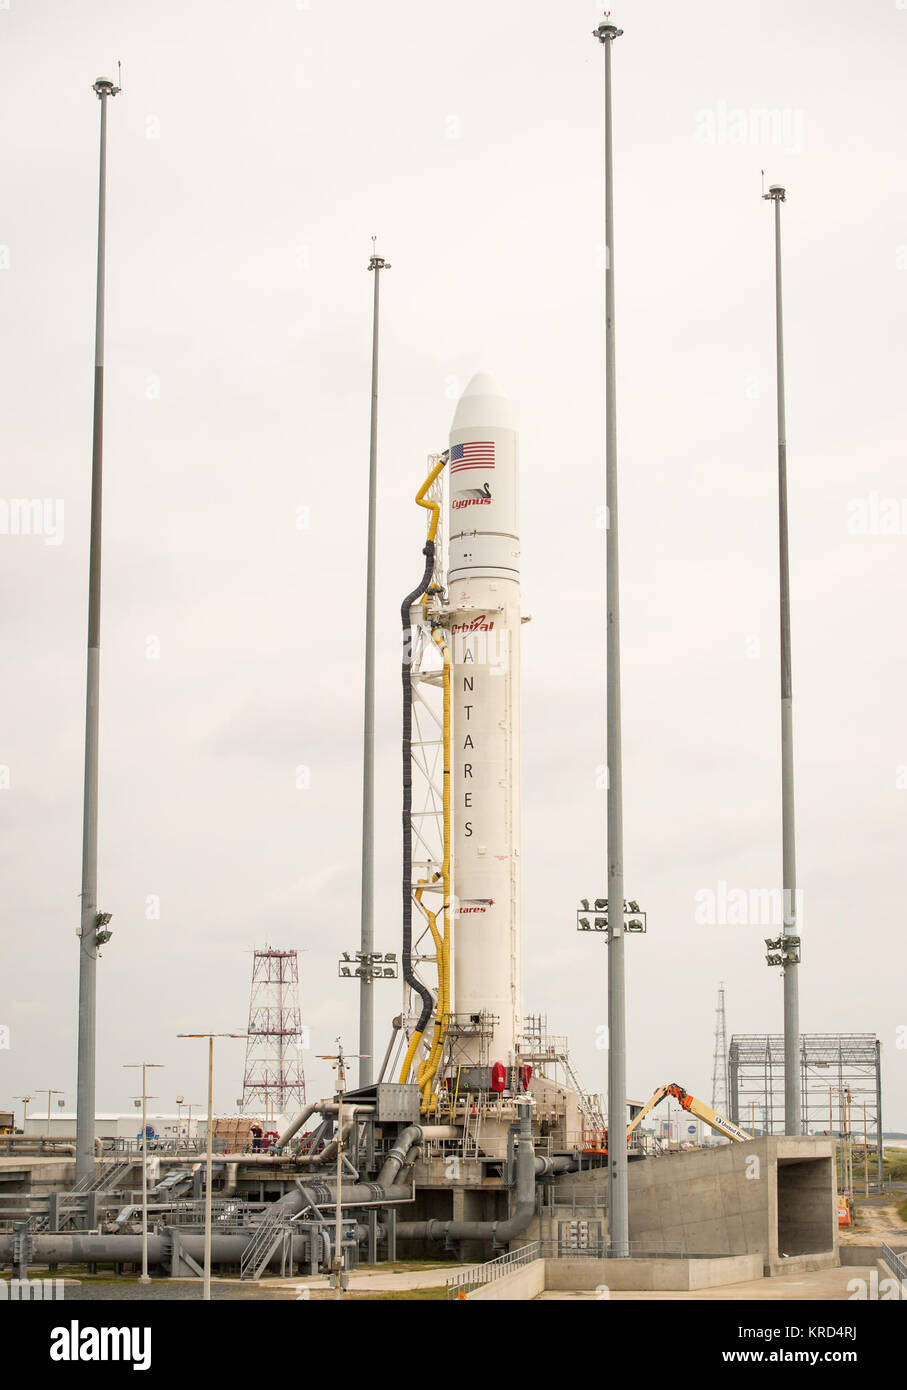 Die Orbital Sciences Corporation Antares Rakete, mit seinen Cygnus Fracht an Bord der Raumsonde ist am Mittelatlantischen Regional Spaceport (MARS) Pad-0 gesehen, eine bei der NASA Wallops Flight Facility, Montag, Sept. 16, 2013 in Virginia. Die NASA Commercial Space Partner, Orbital Sciences Corporation, zielt eine Sept. 18 Start für seine Demonstration cargo resupply Mission zur Internationalen Raumstation. Photo Credit: (NASA/Bill Ingalls) Antares Orb-D 1 Rakete auf Pad auf Wallops (201309160006 HQ) Stockfoto